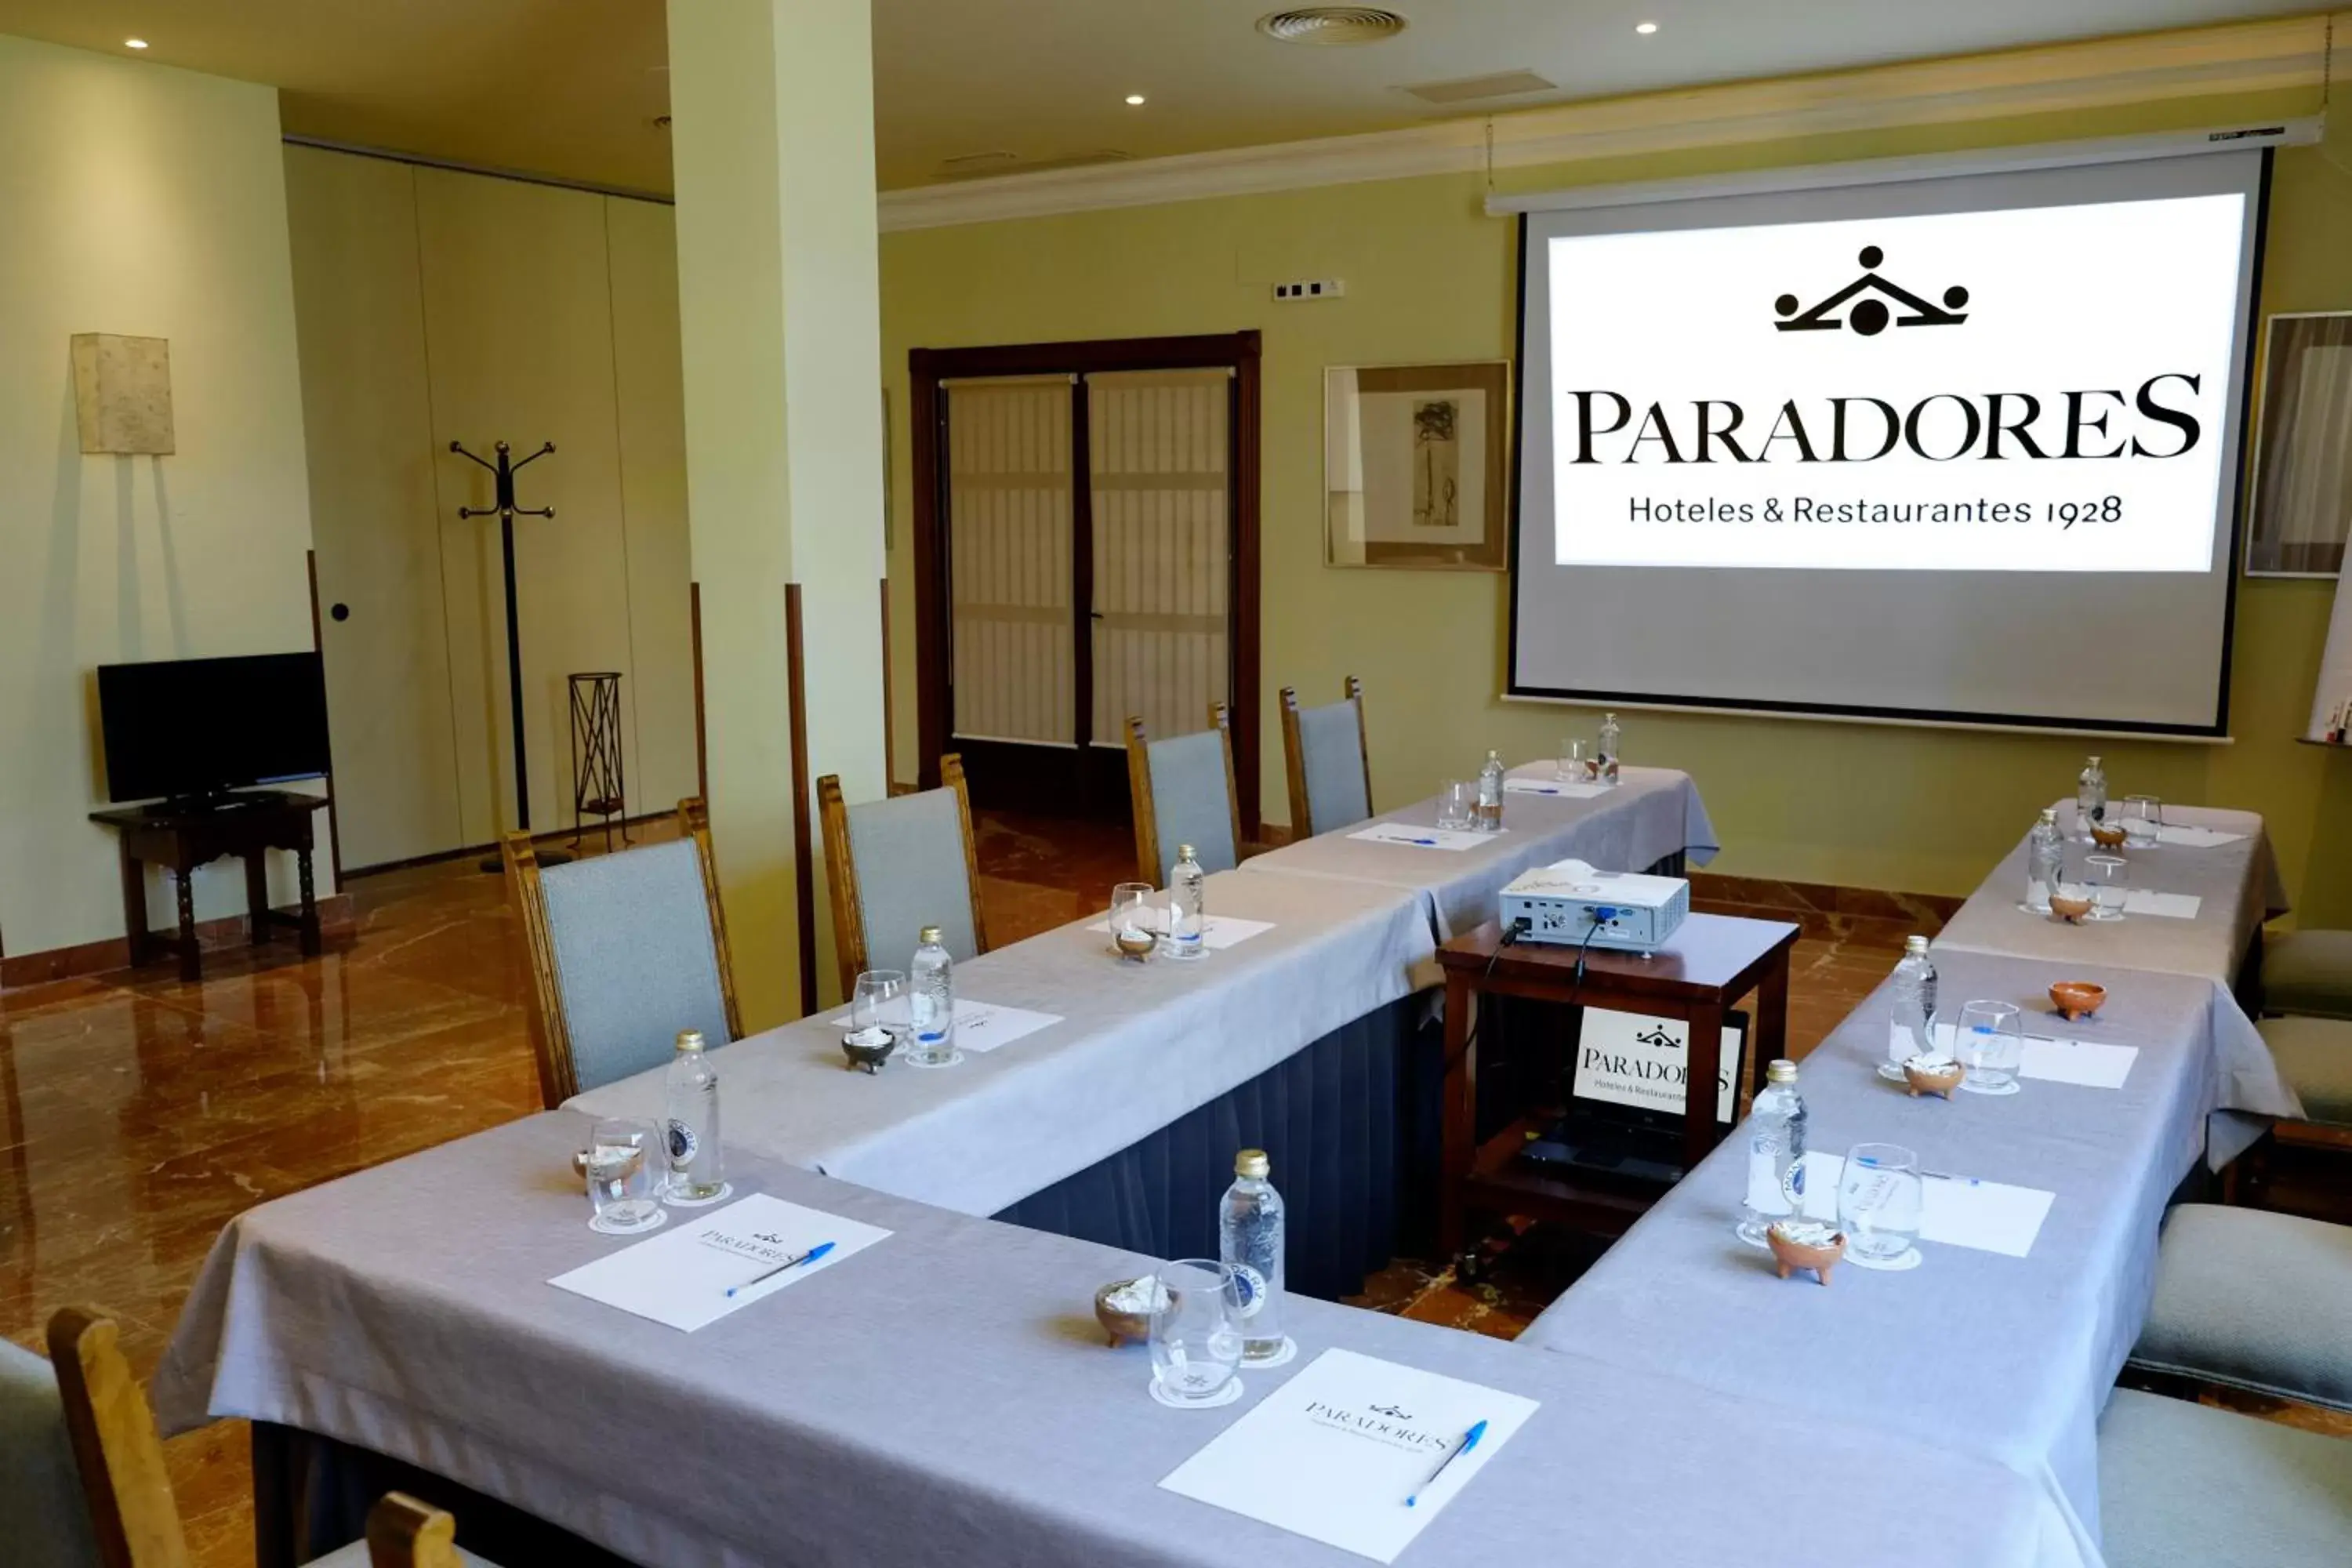 Meeting/conference room in Parador de Ferrol